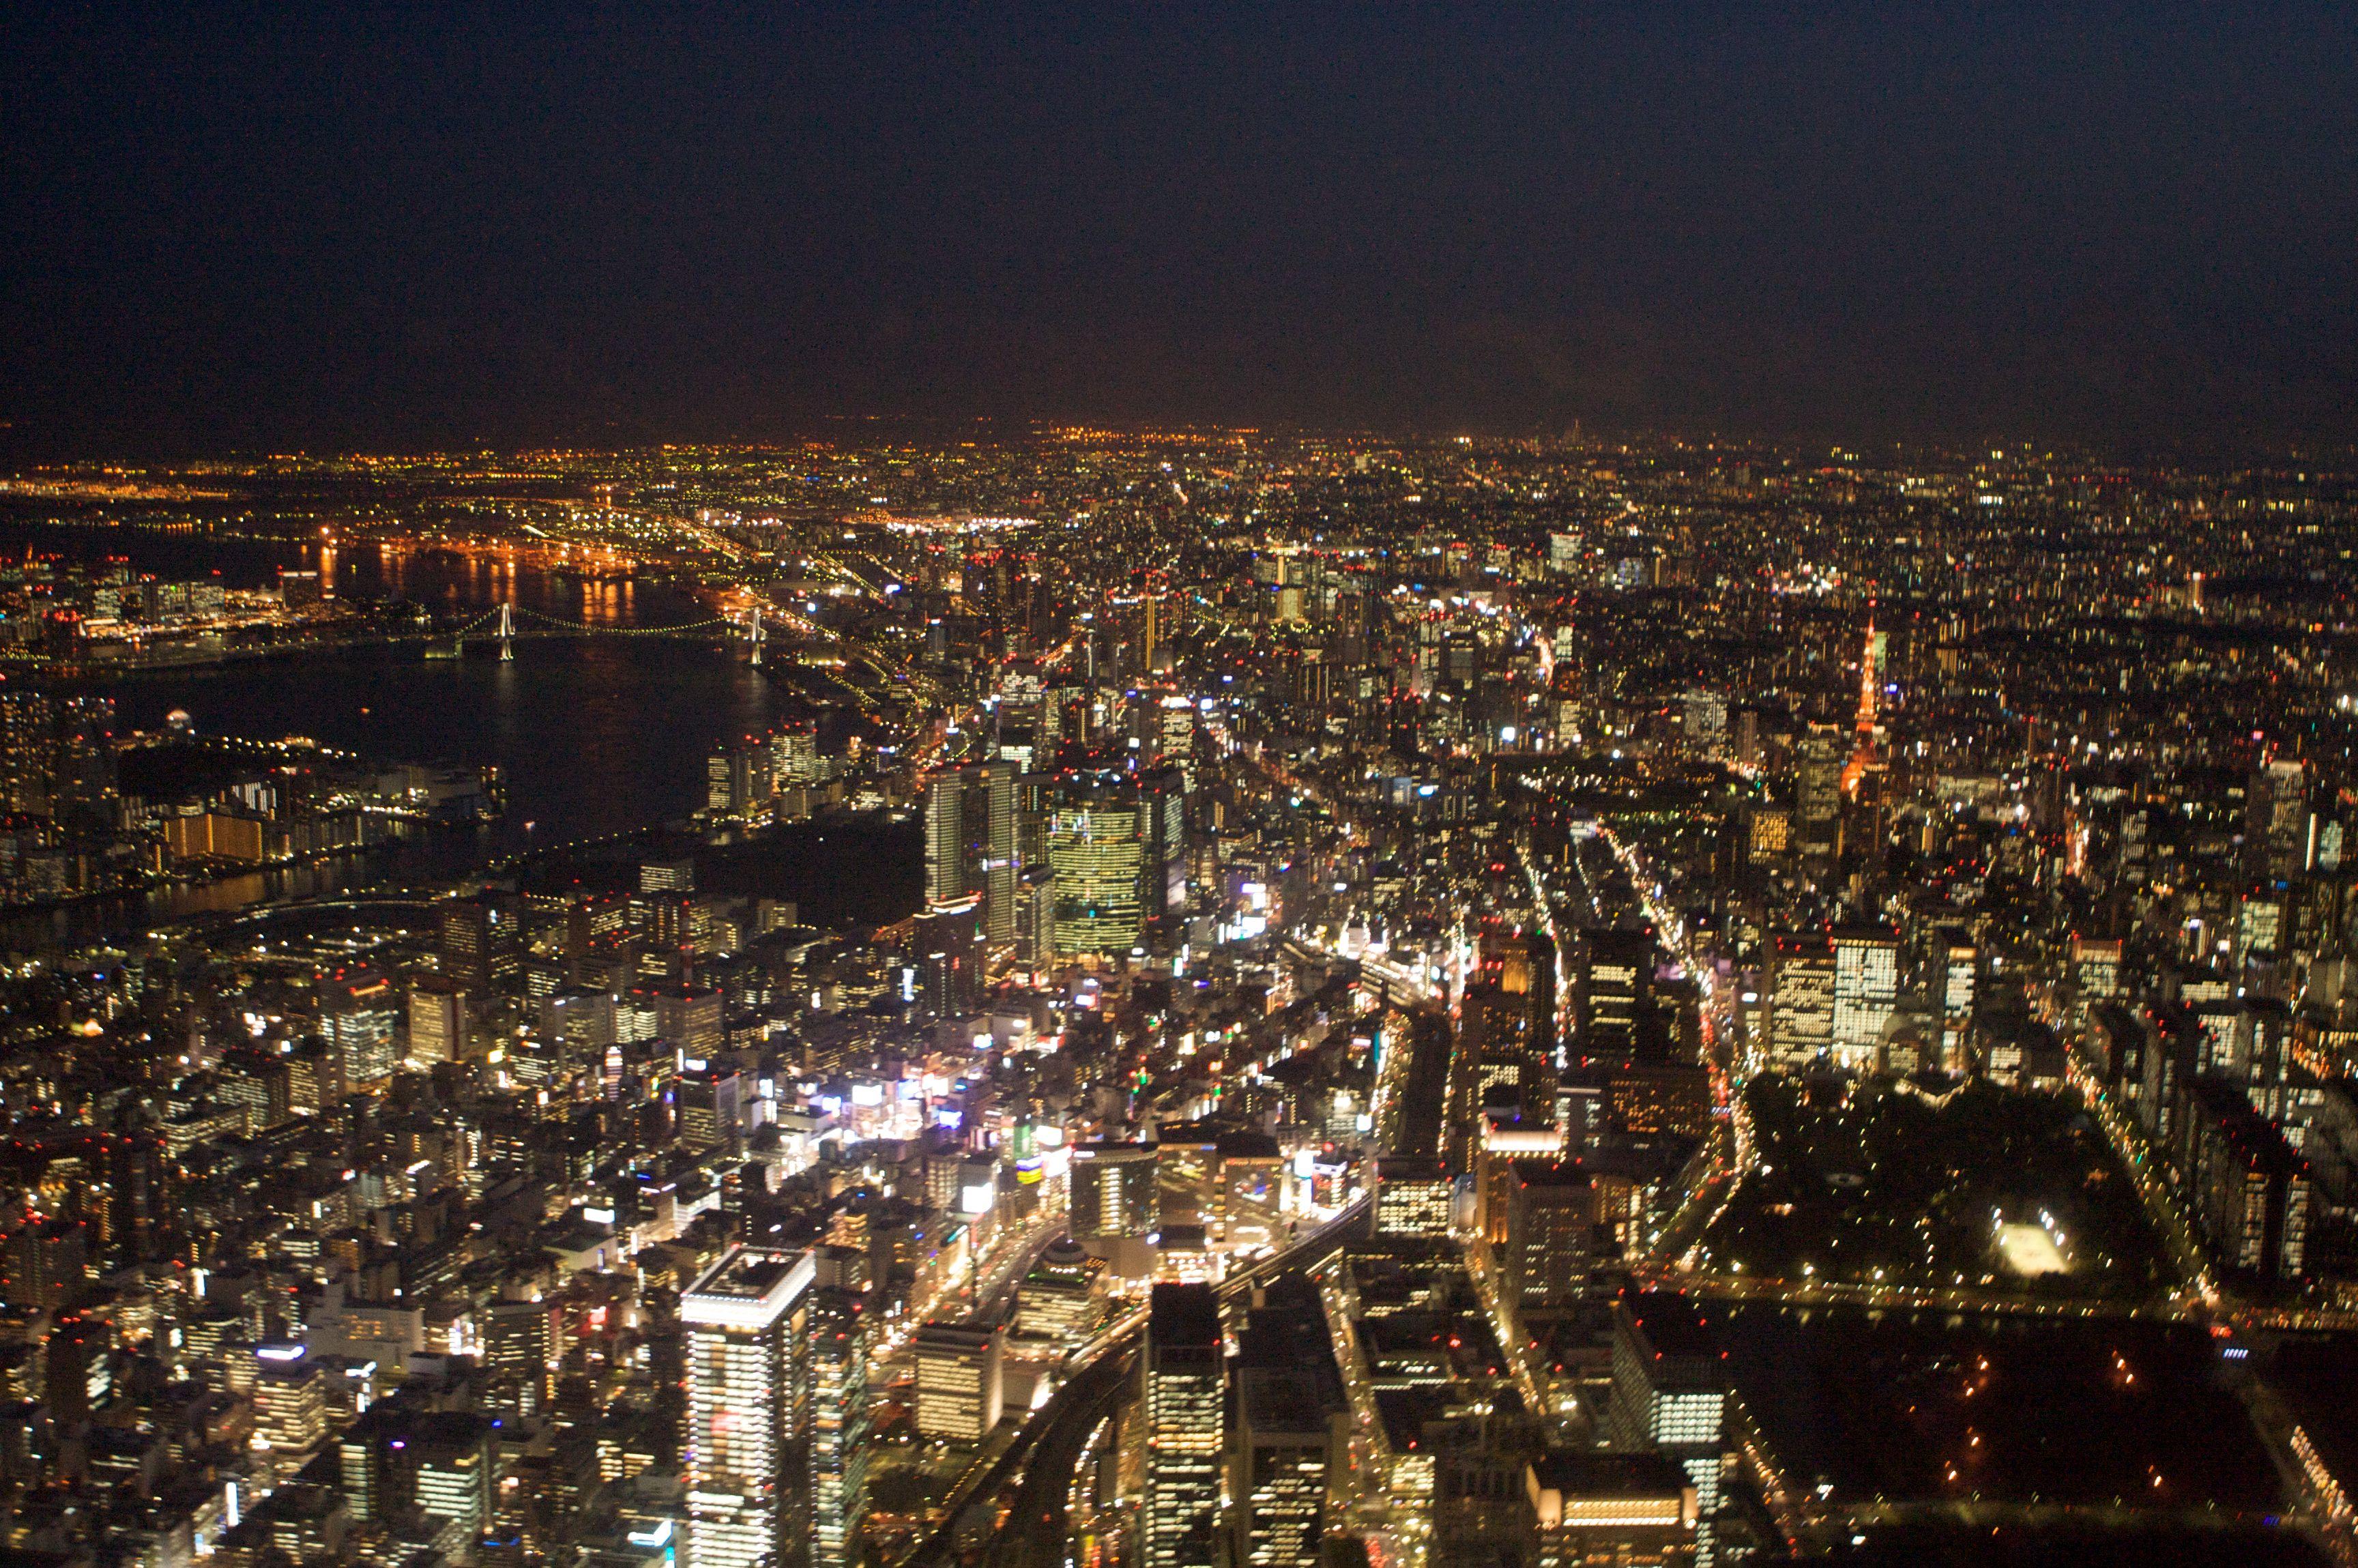 Hình nền và hình ảnh 3456x2298 Nhật Bản: Hình nền đêm Tokyo